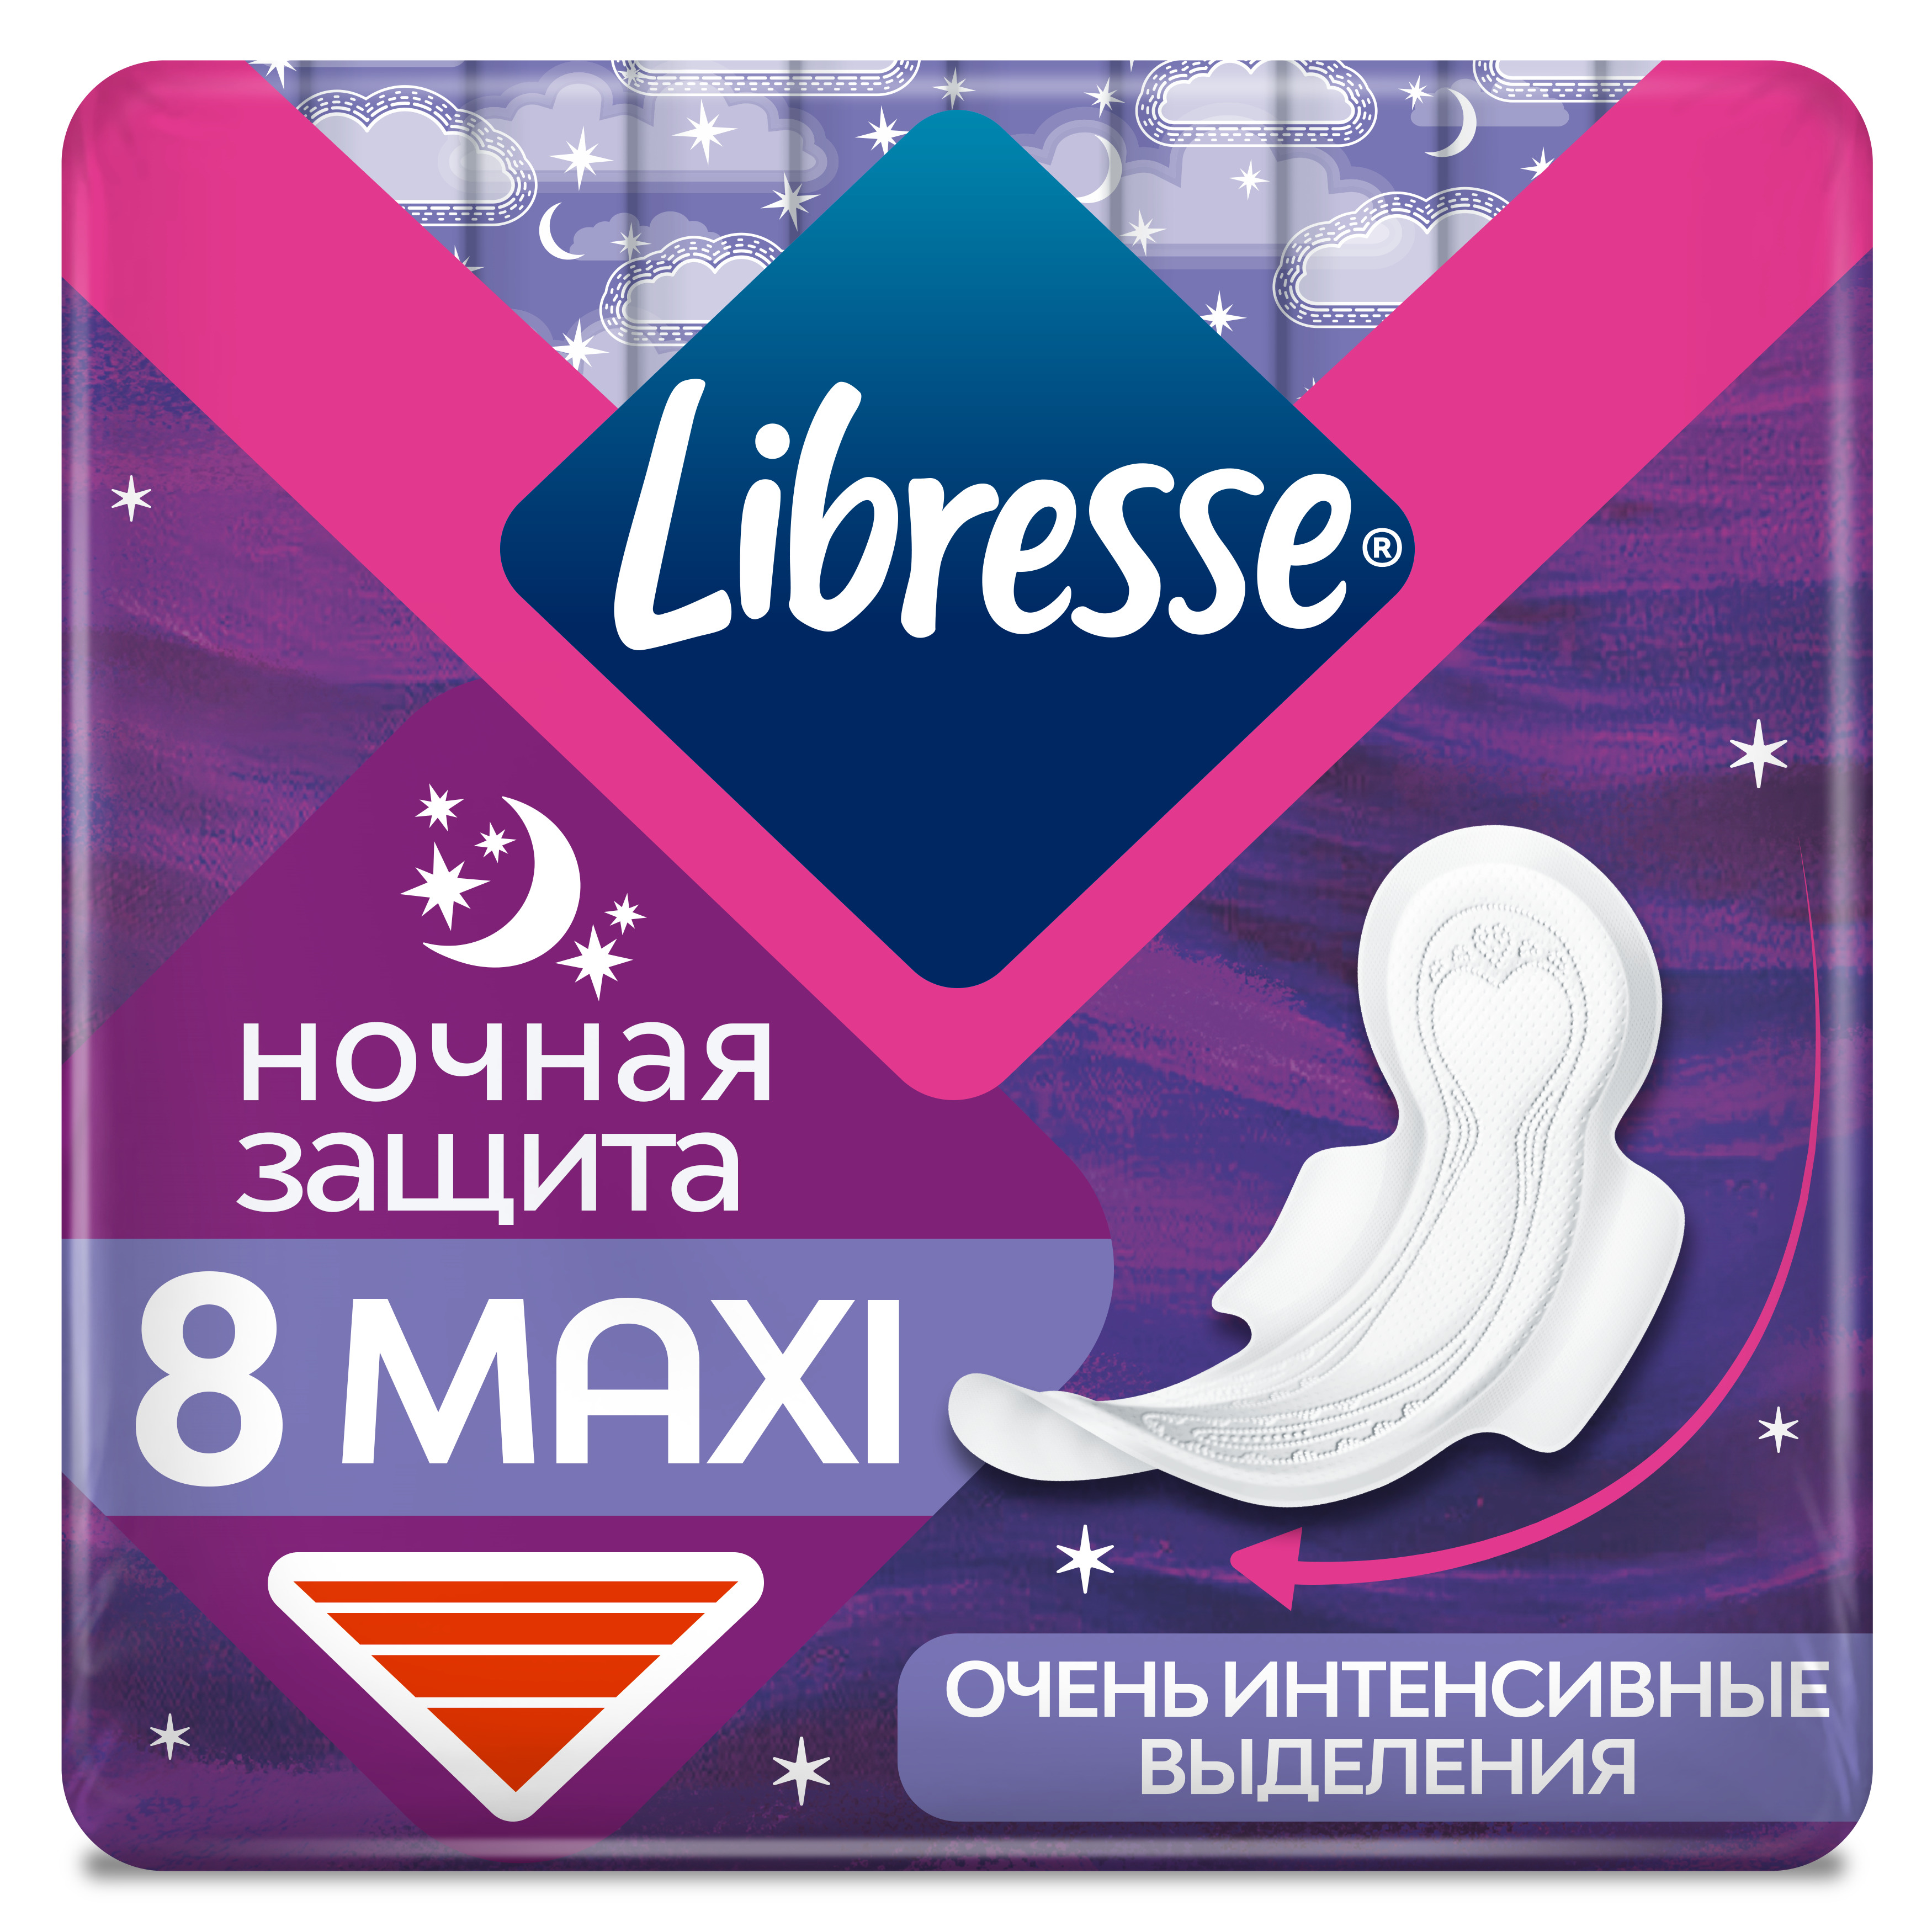 Гигиенические прокладки Libresse Maxi Ночные, 8шт.